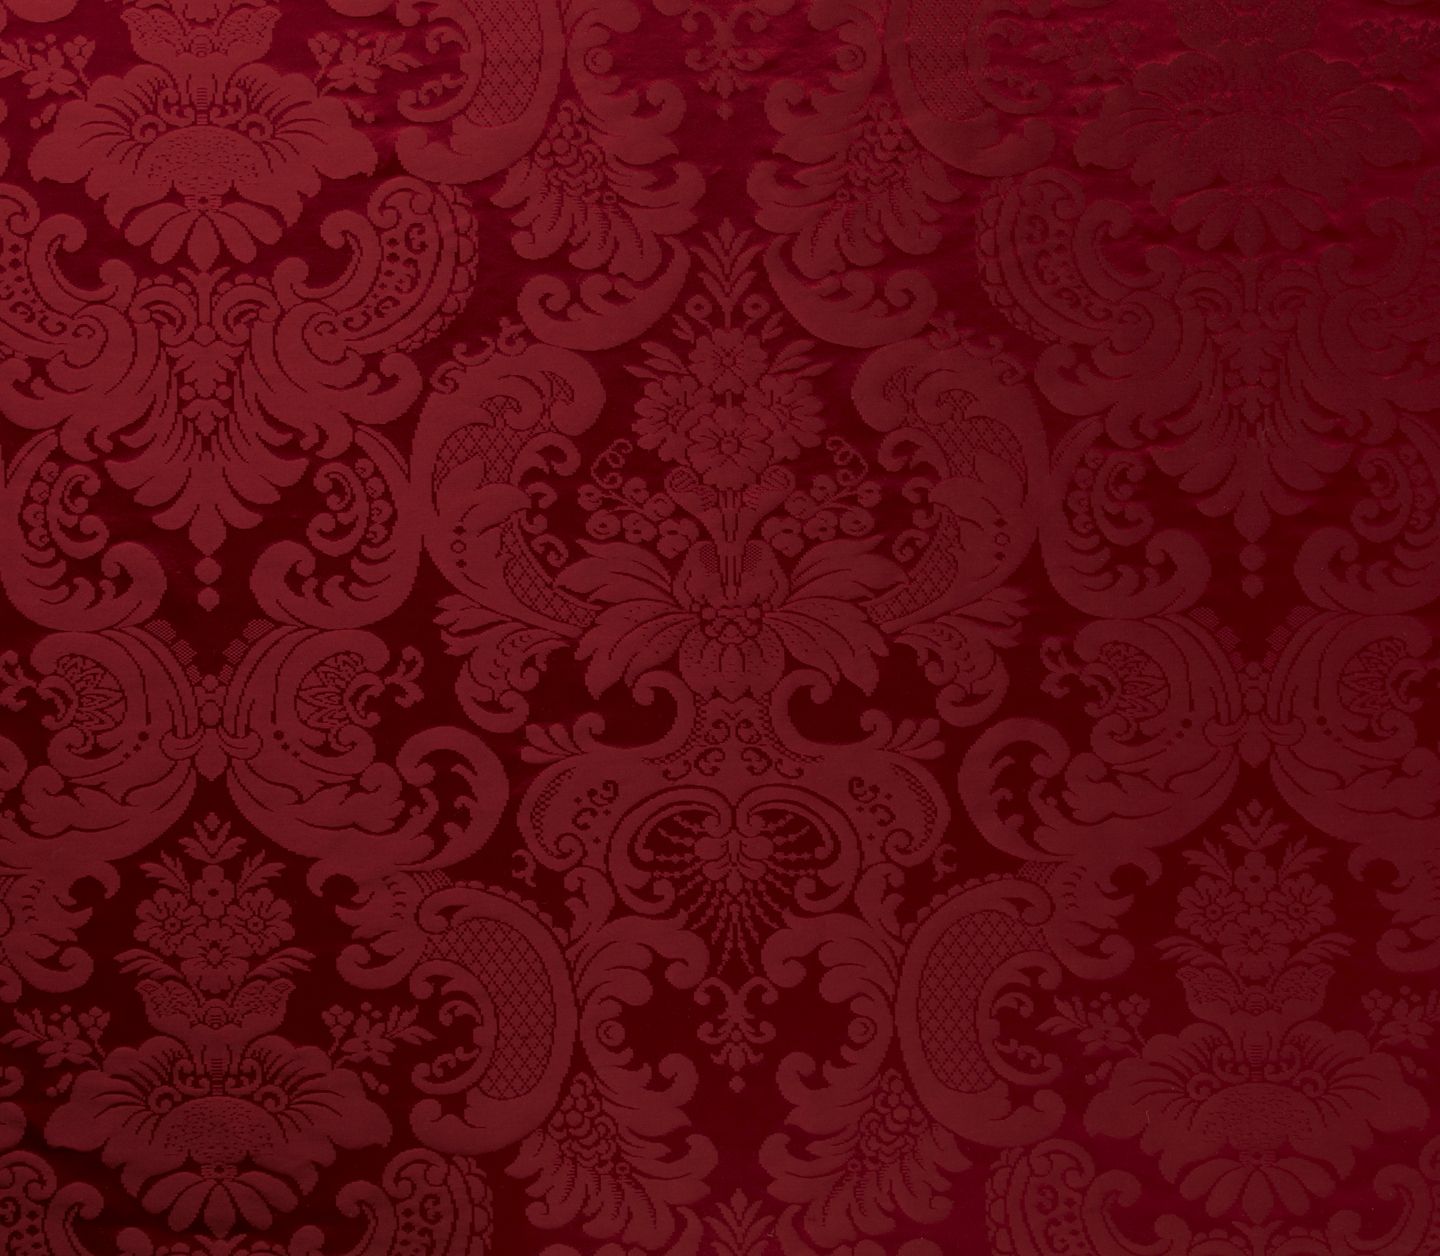 red damask wallpaper 2015 - Grasscloth Wallpaper